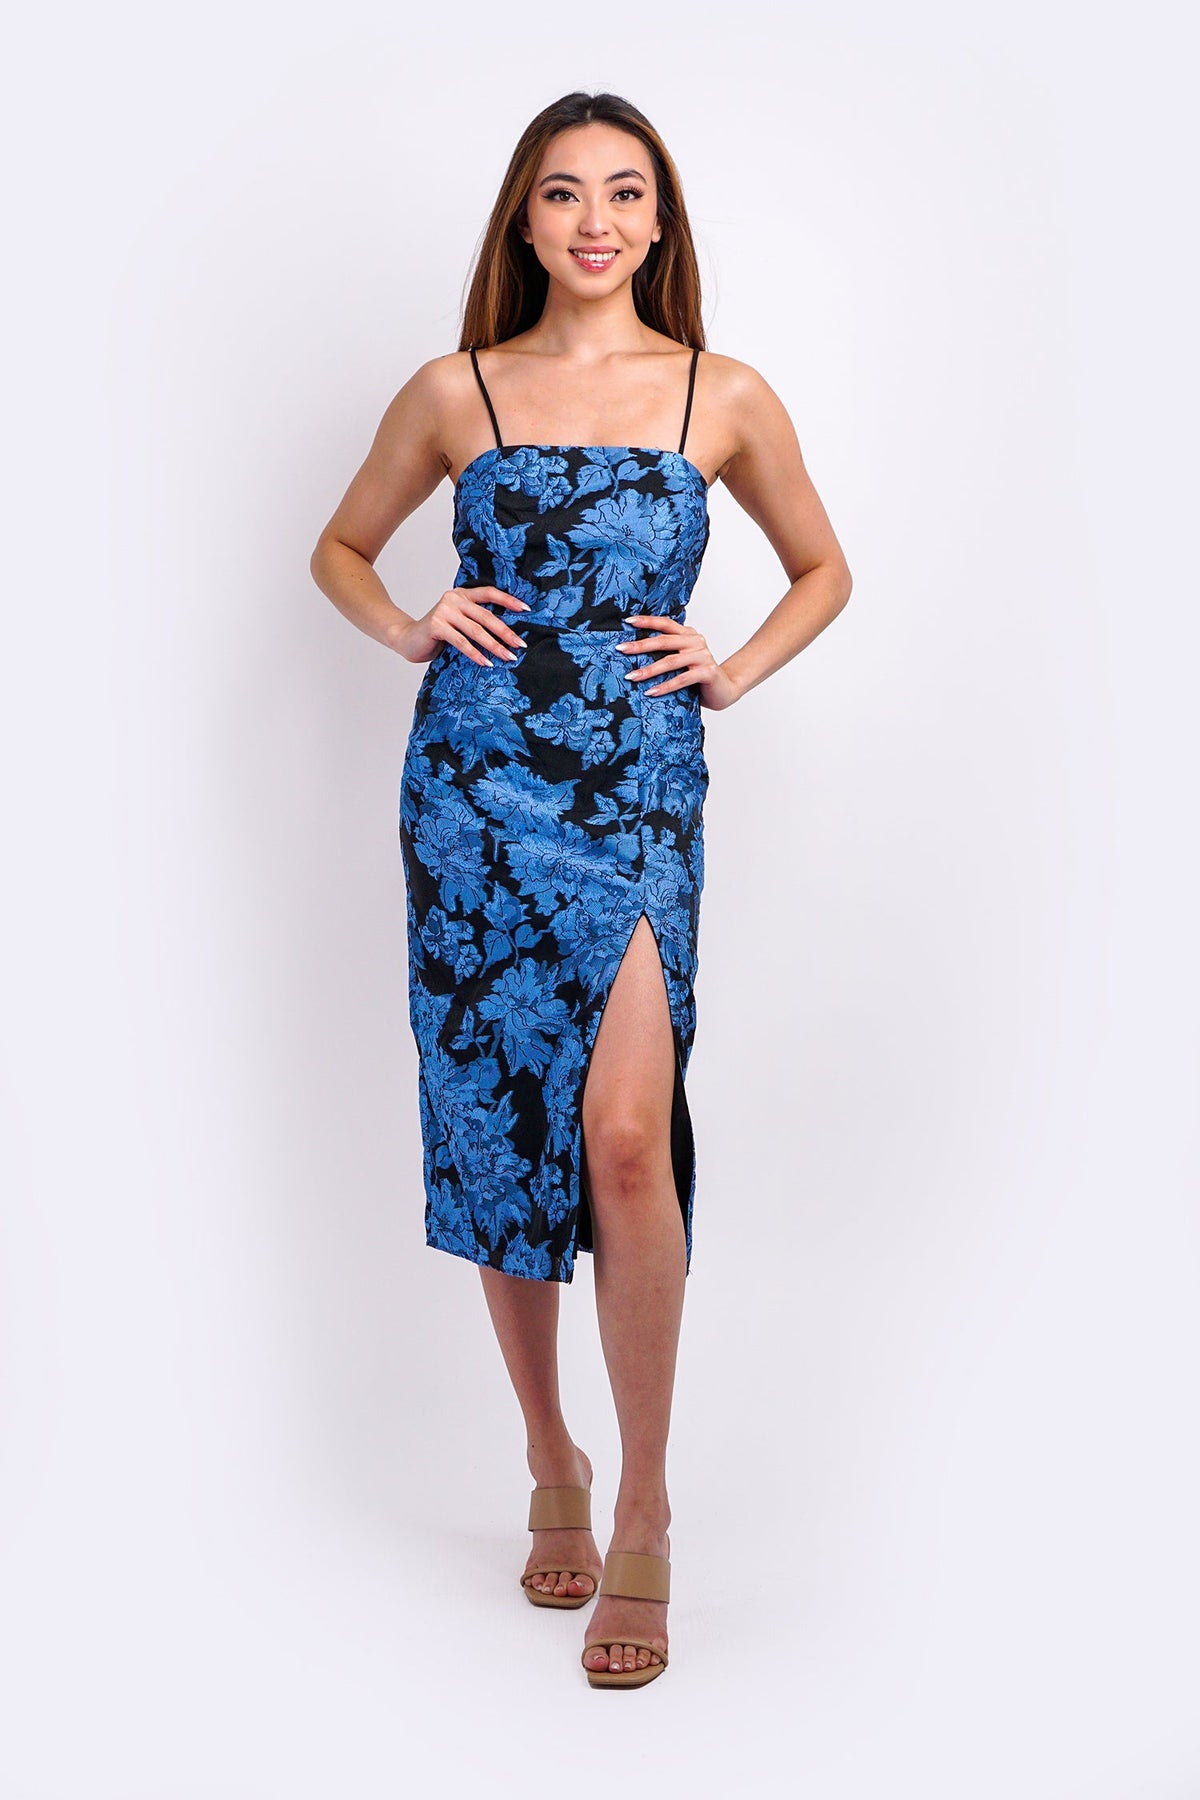 DCD DRESSES Blue/Black Floral Jacquard Midi Dress